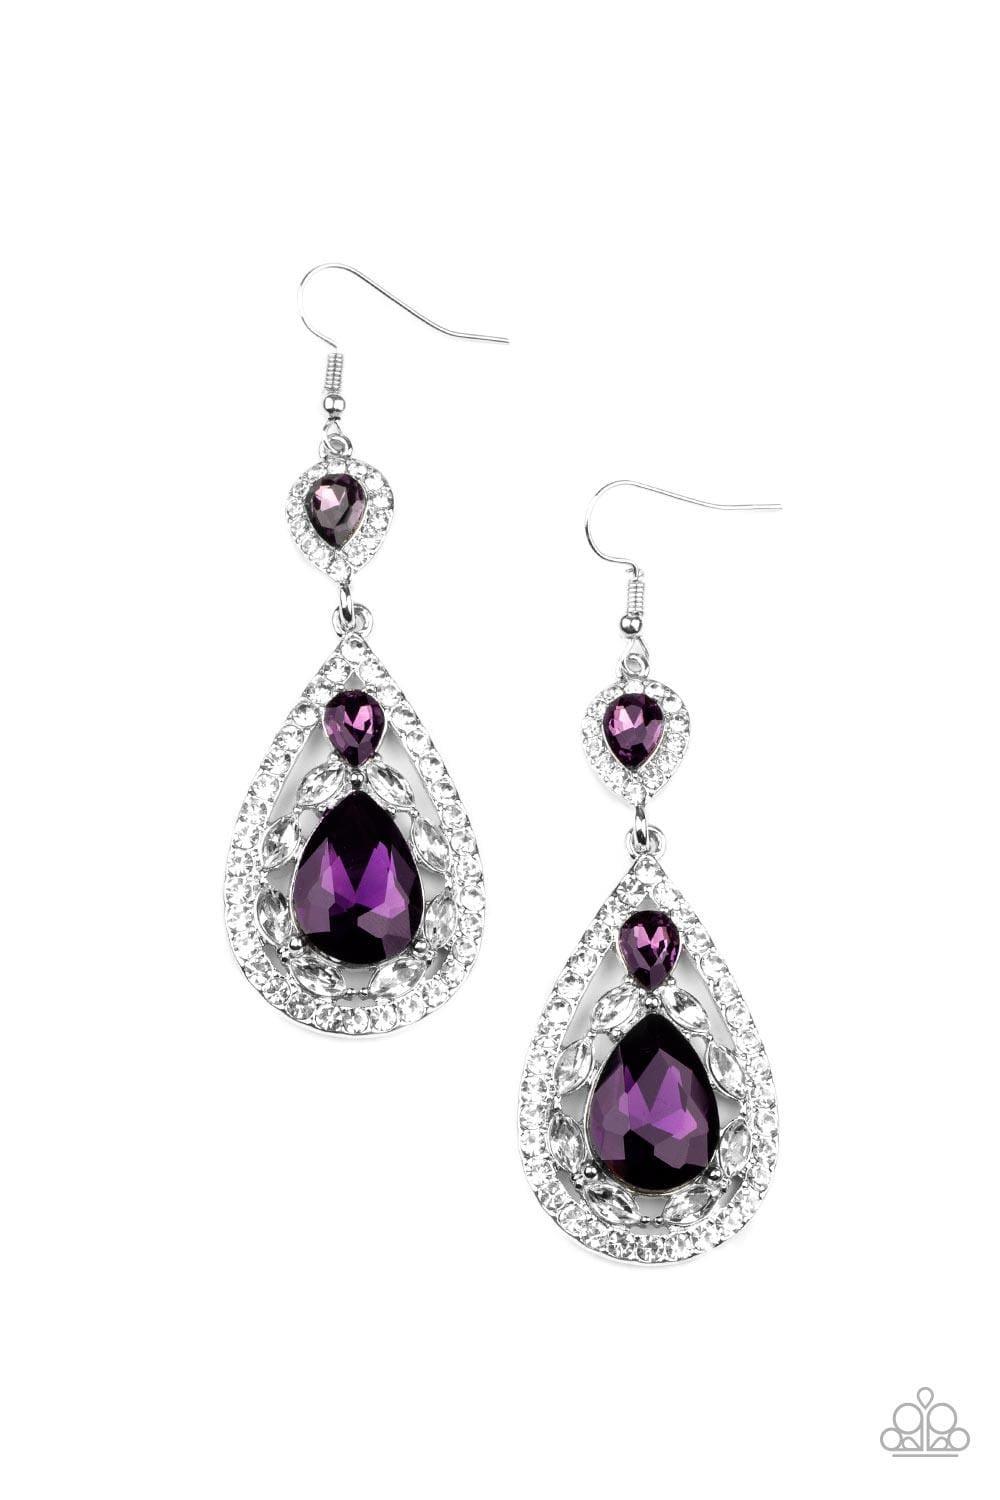 Paparazzi Accessories - Posh Pageantry - Purple Earrings - Bling by JessieK